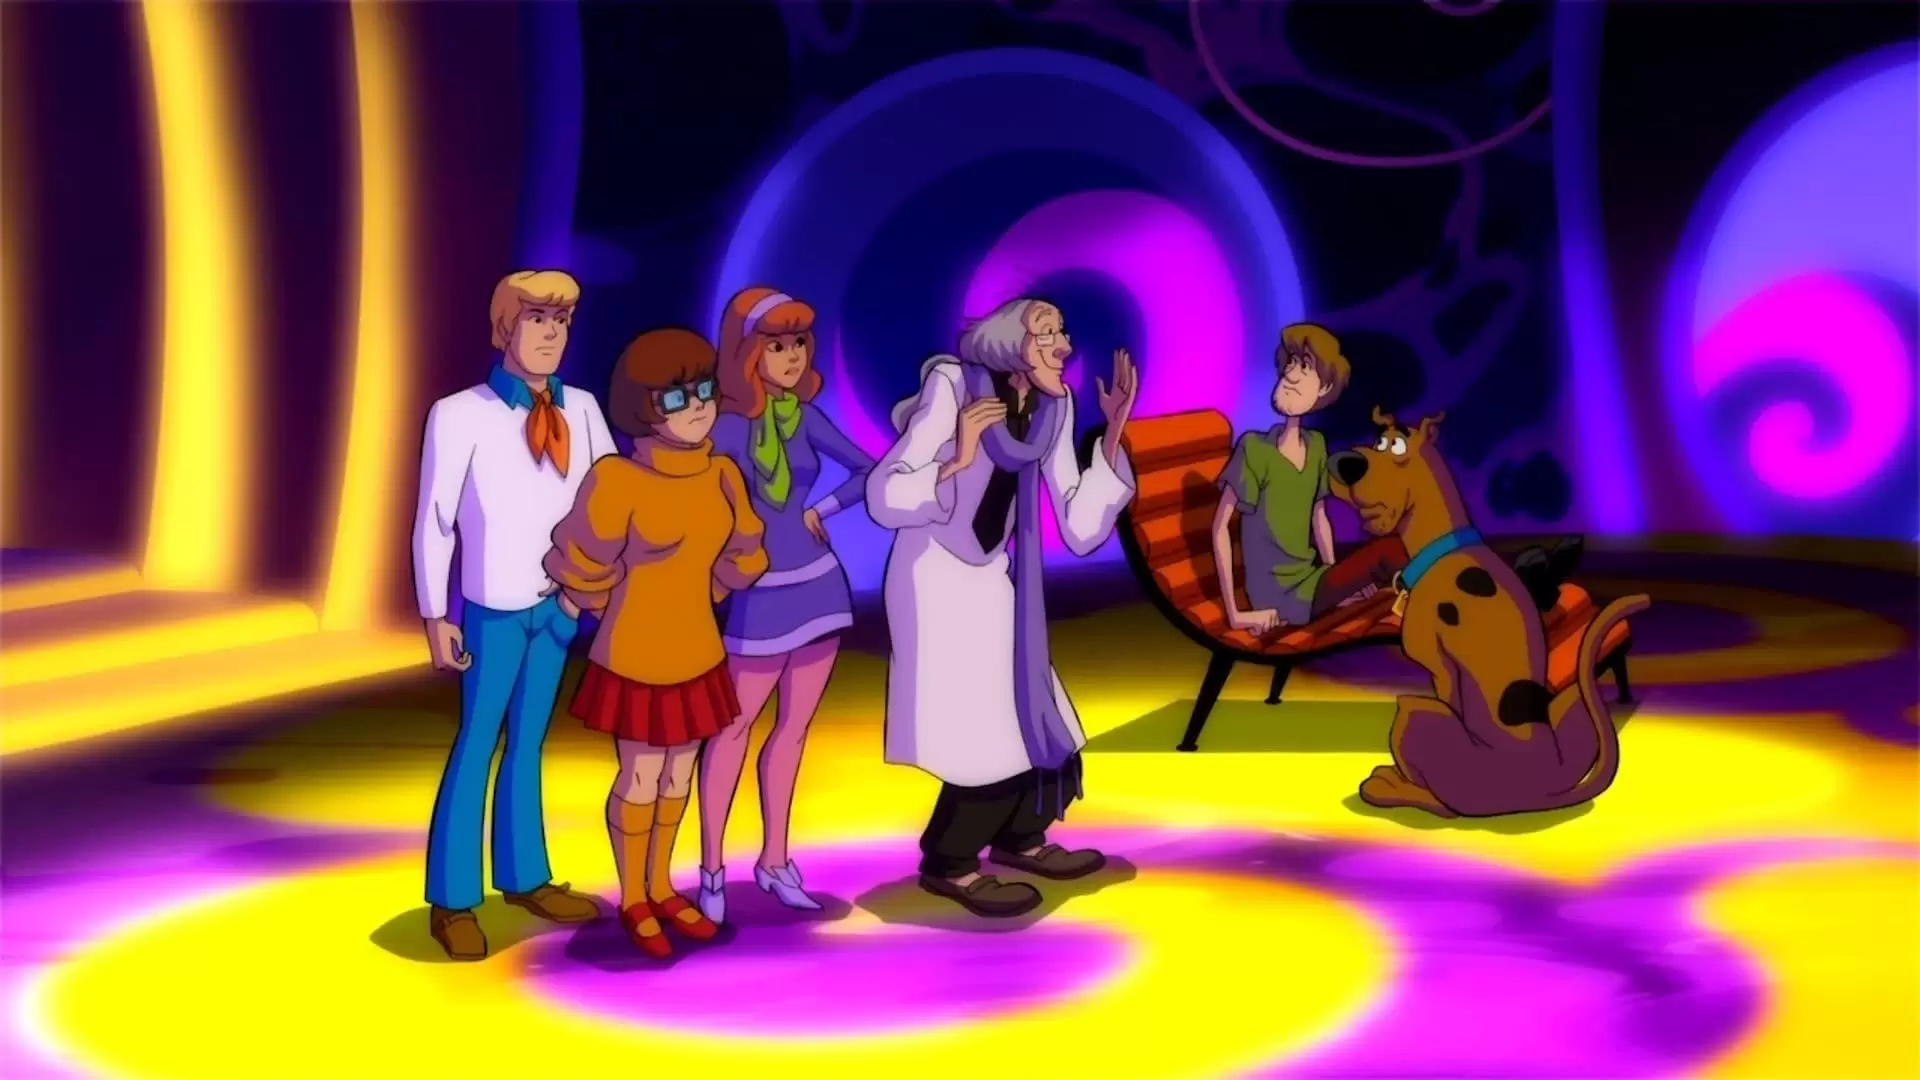 دانلود انیمیشن Scooby-Doo! Legend of the Phantosaur 2011 (اسکوبی دو! افسانه شبح) با زیرنویس فارسی و تماشای آنلاین